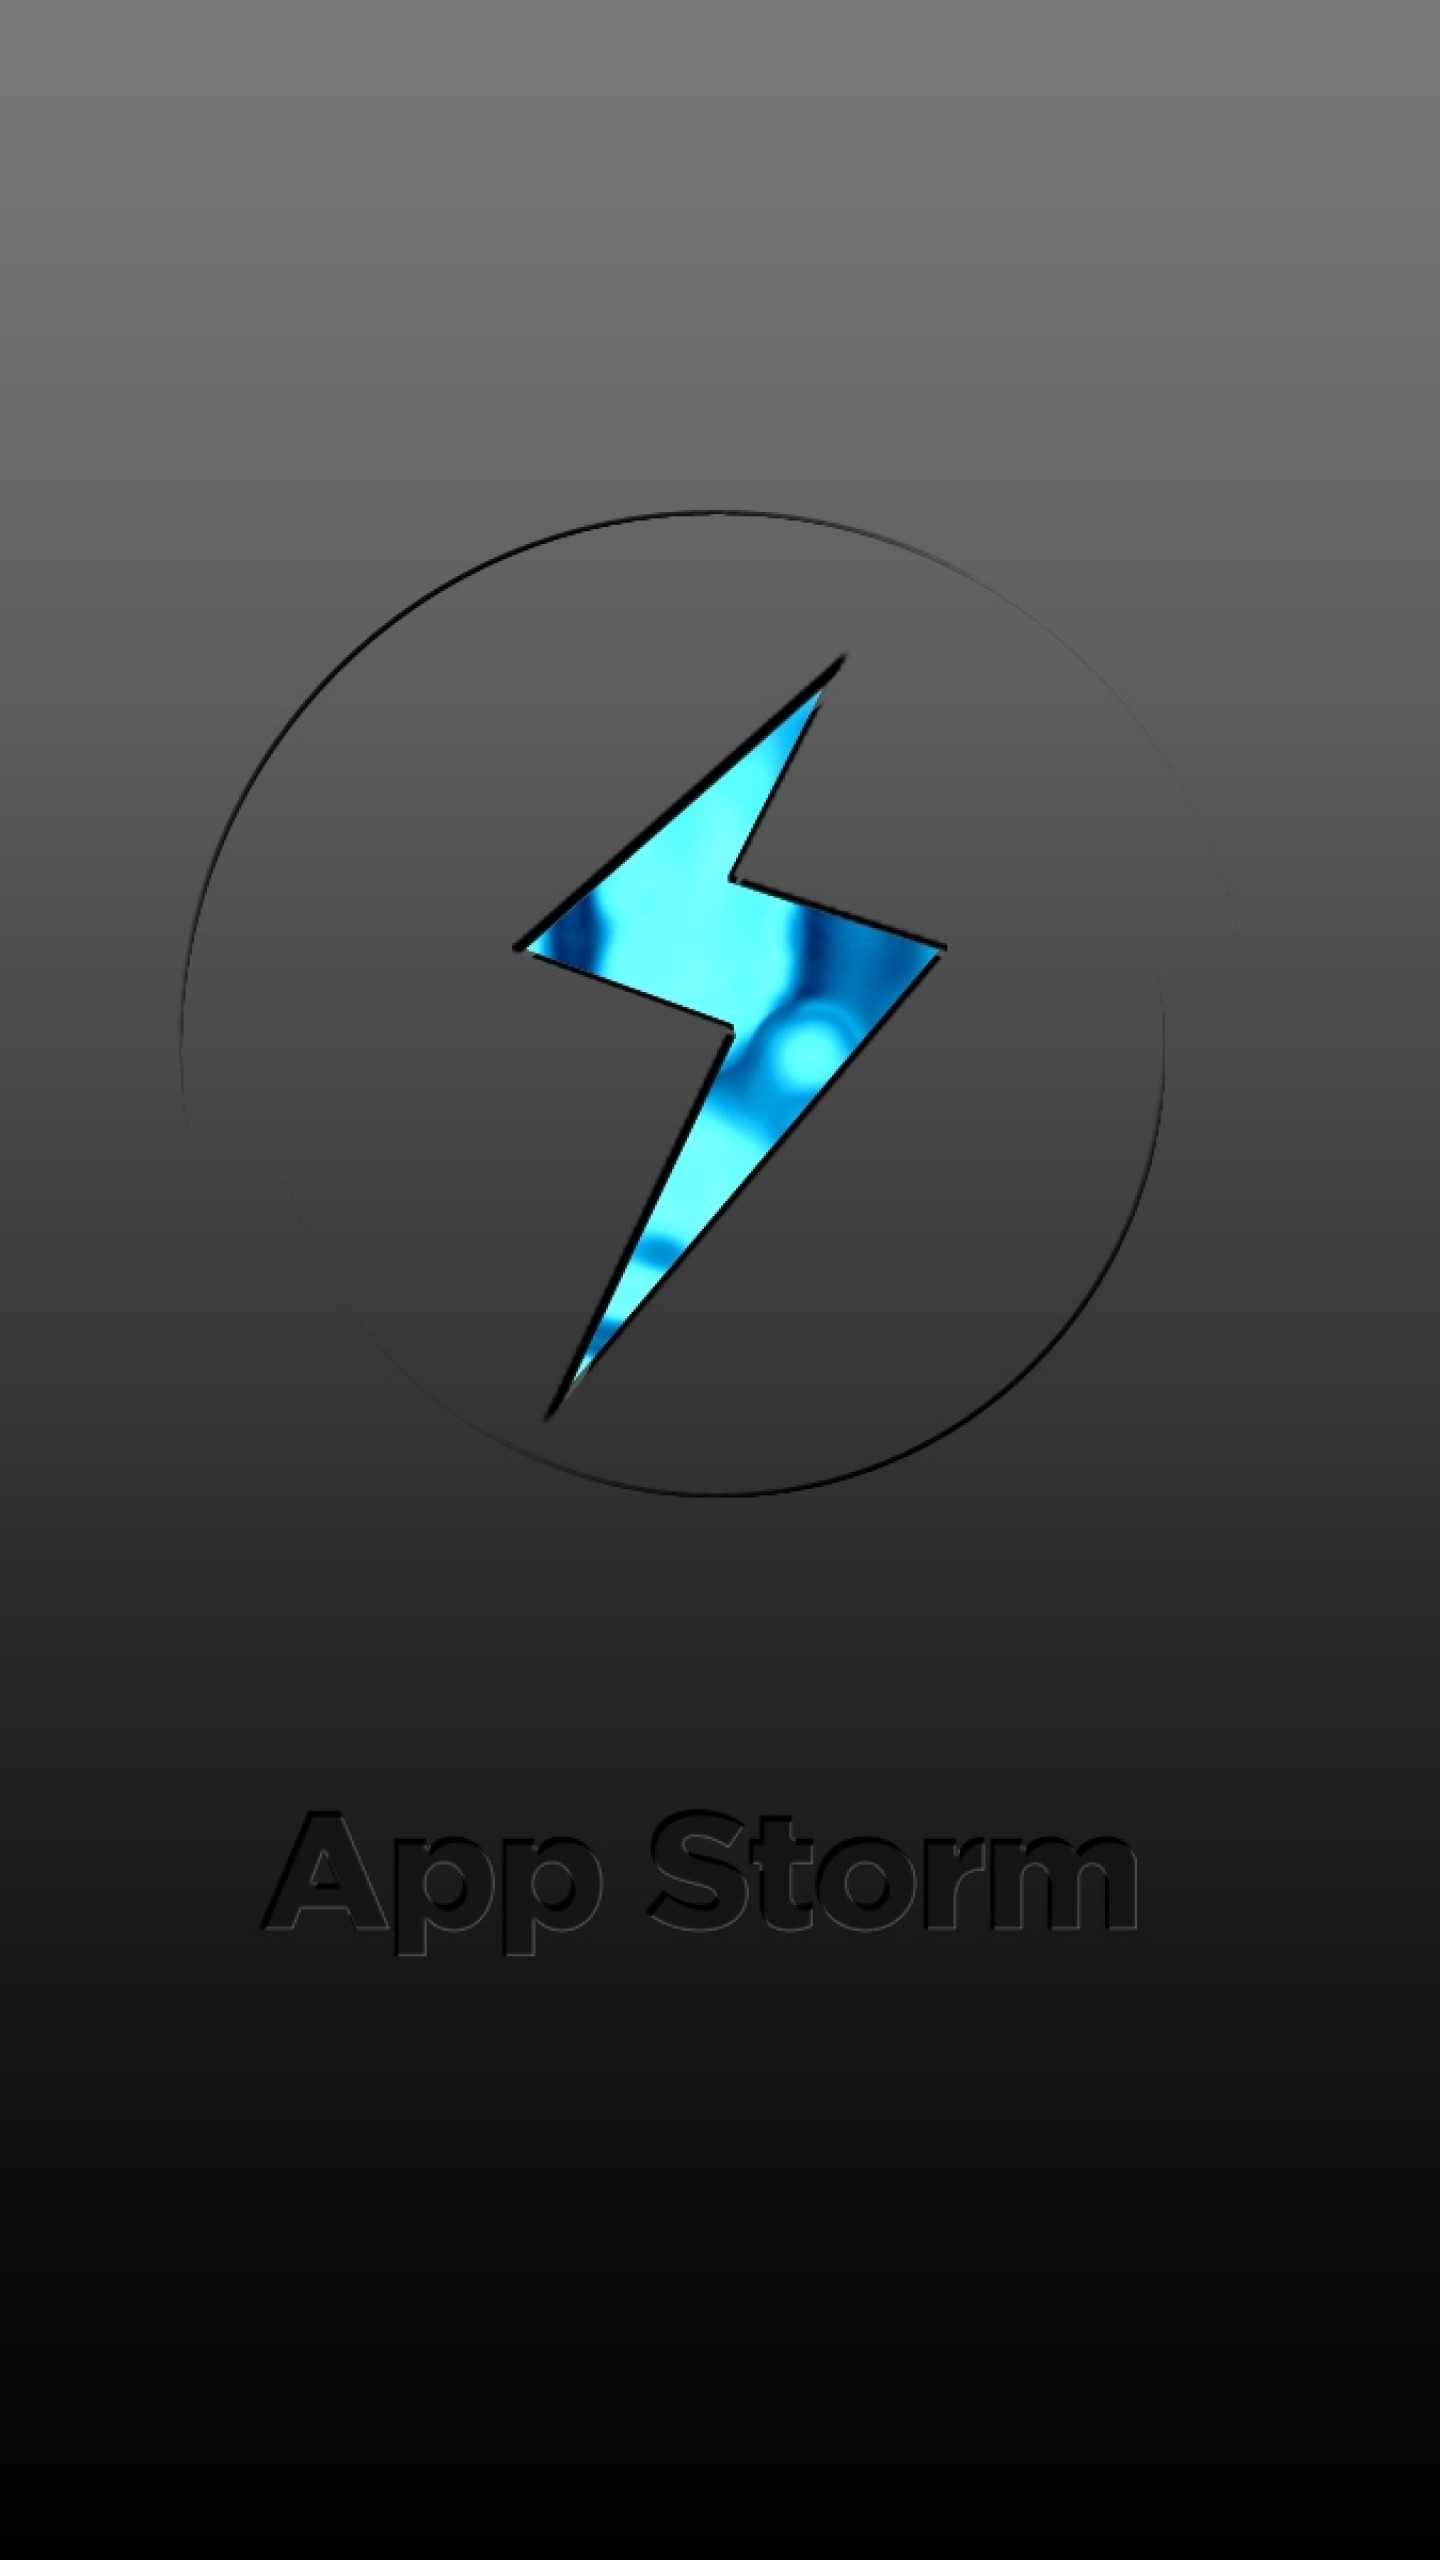 1440x2560  Wallpaper app storm, apple, mac, grey, sign, blue